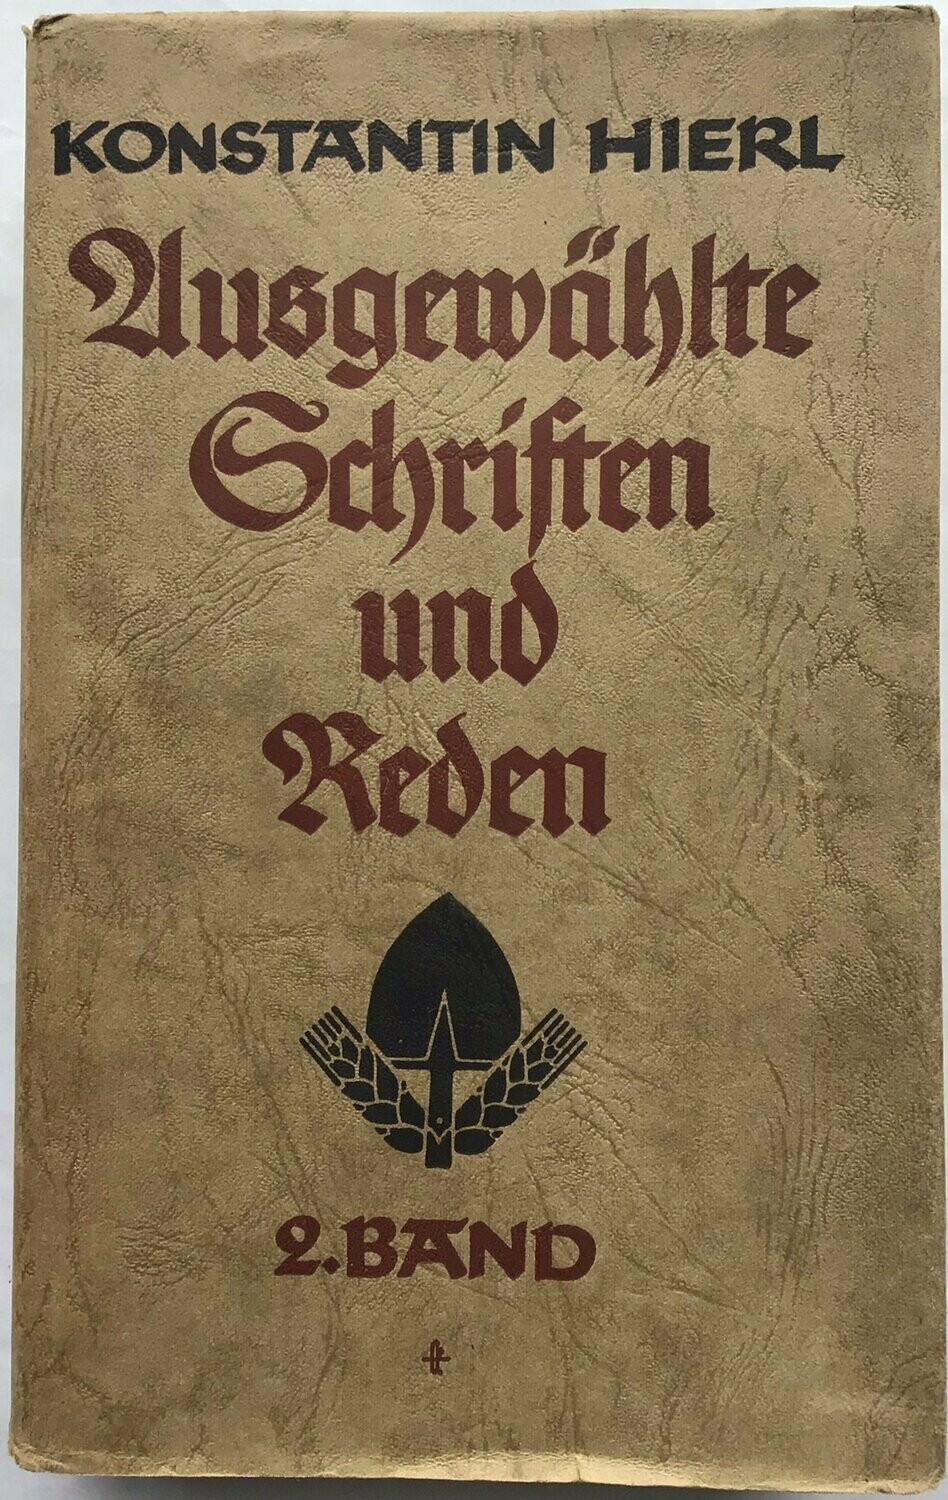 Konstantin Hierl - Ausgewählte Schriften und Reden - Band 2 - Ganzleinenausgabe (Erstauflage) aus 1941 mit Original-Schutzumschlag